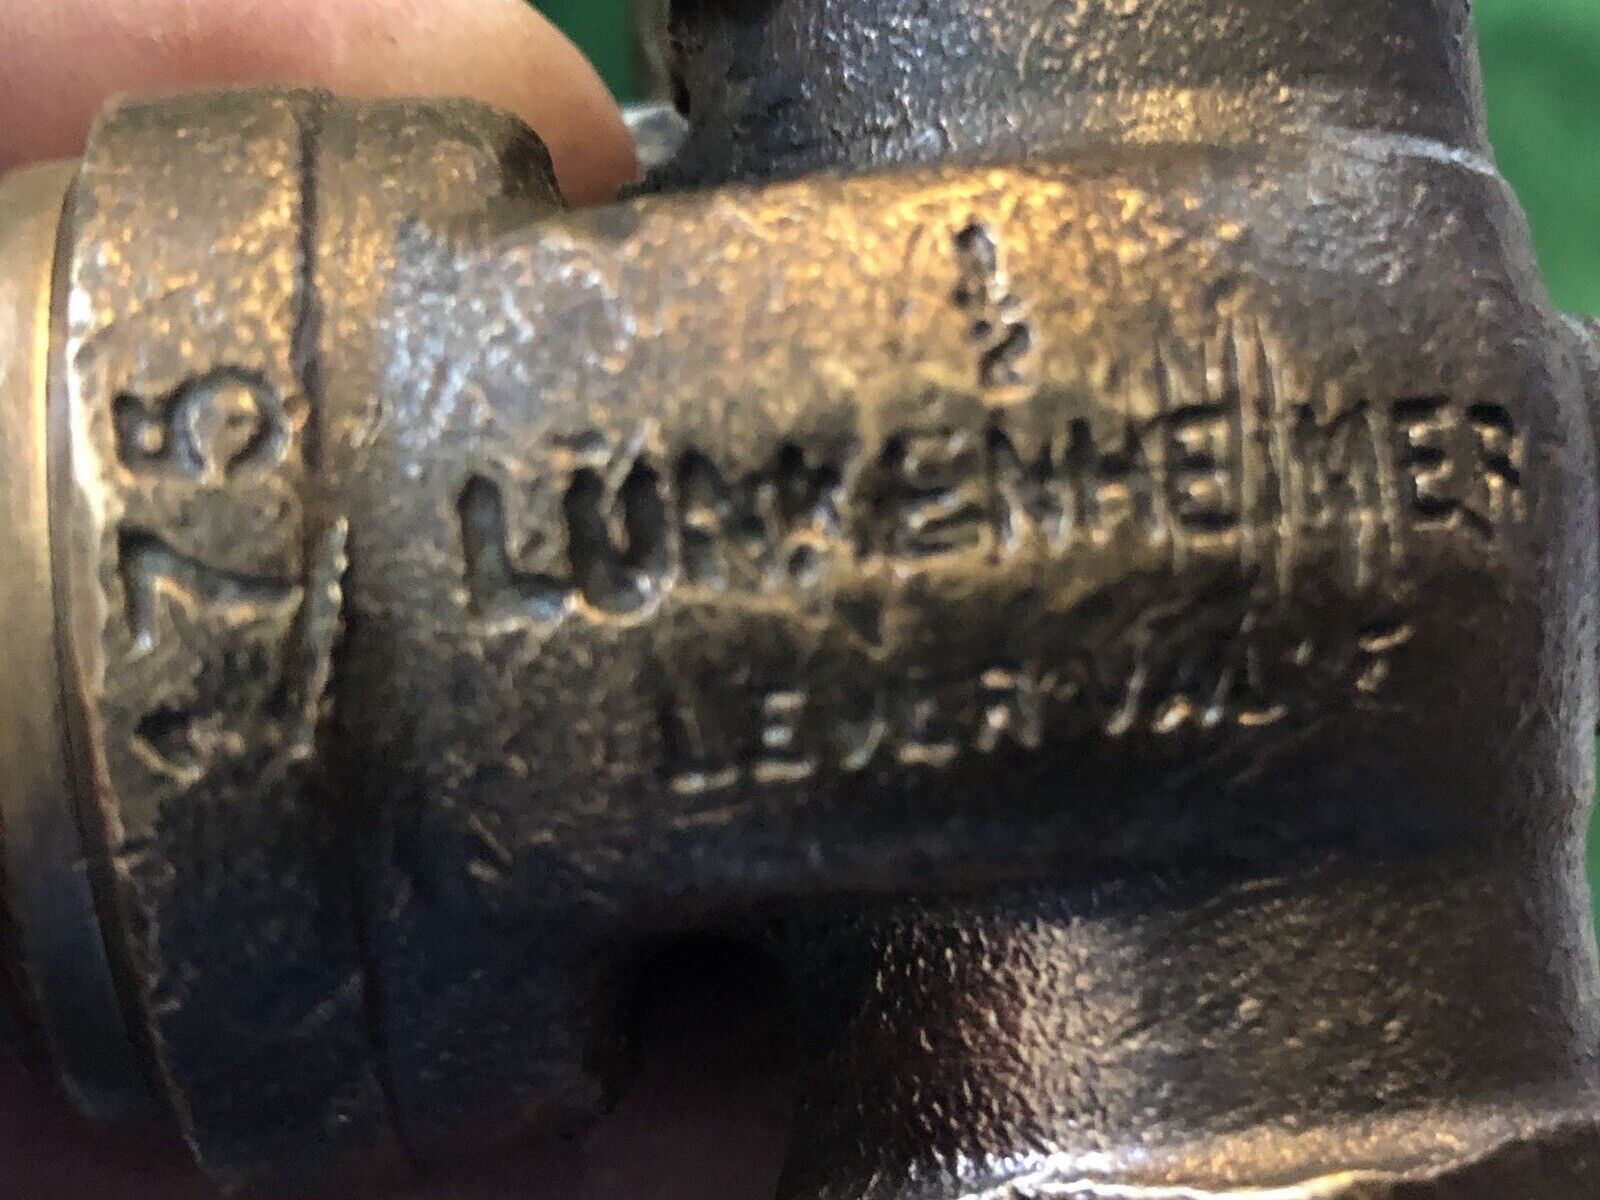 Vintage Lunkenheimer Valve Brass 1/2” NPT steam hit and miss engine